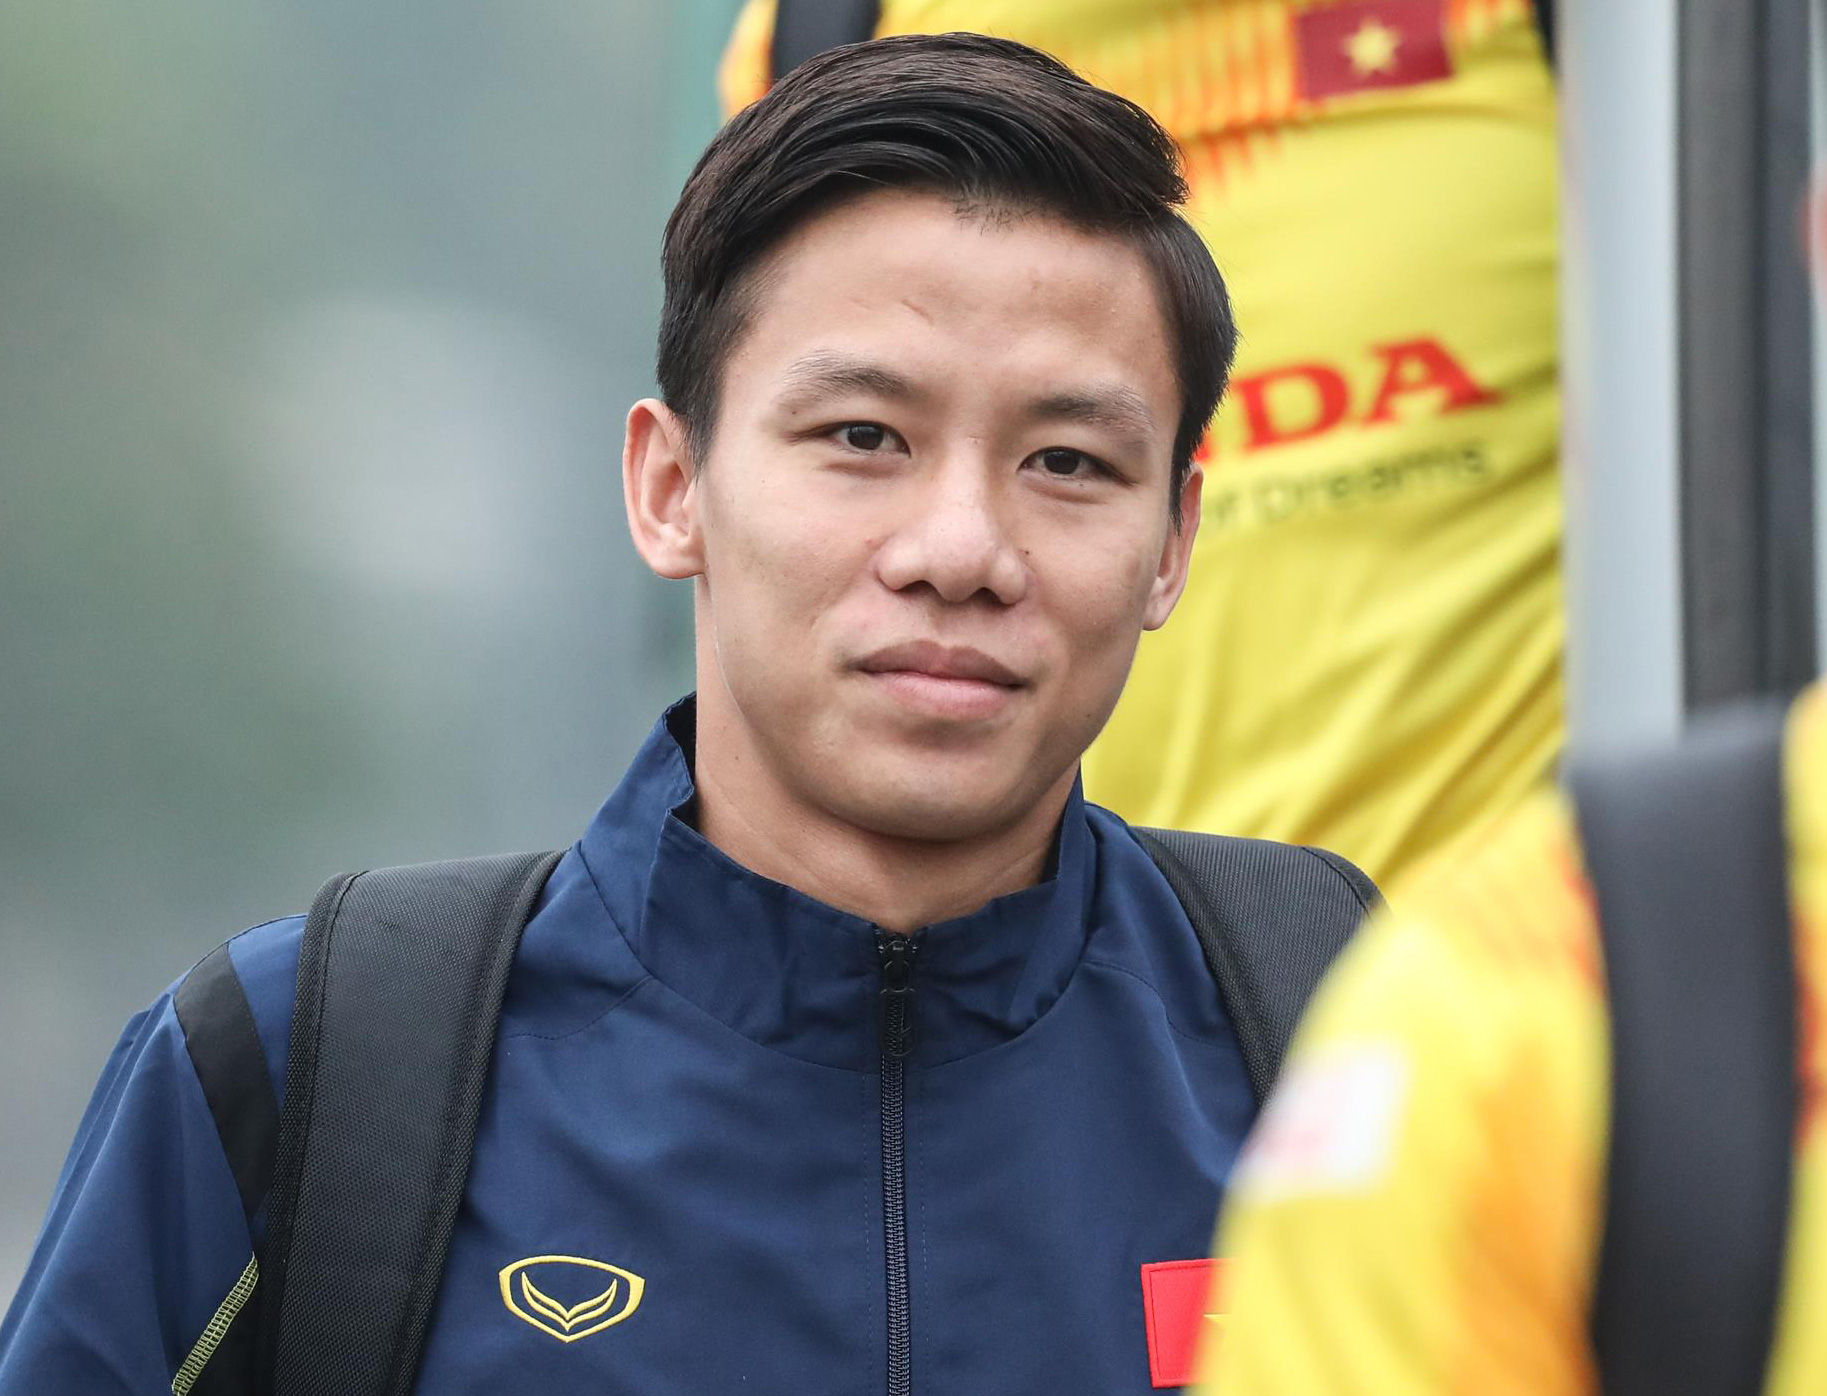 Với vai trò là đội trưởng của đội tuyển bóng đá Việt Nam, Quế Ngọc Hải là một trong những cầu thủ hàng đầu của Việt Nam. Hãy đến với hình ảnh của anh để khám phá về cuộc sống và sự nghiệp của một đội trưởng xuất sắc.